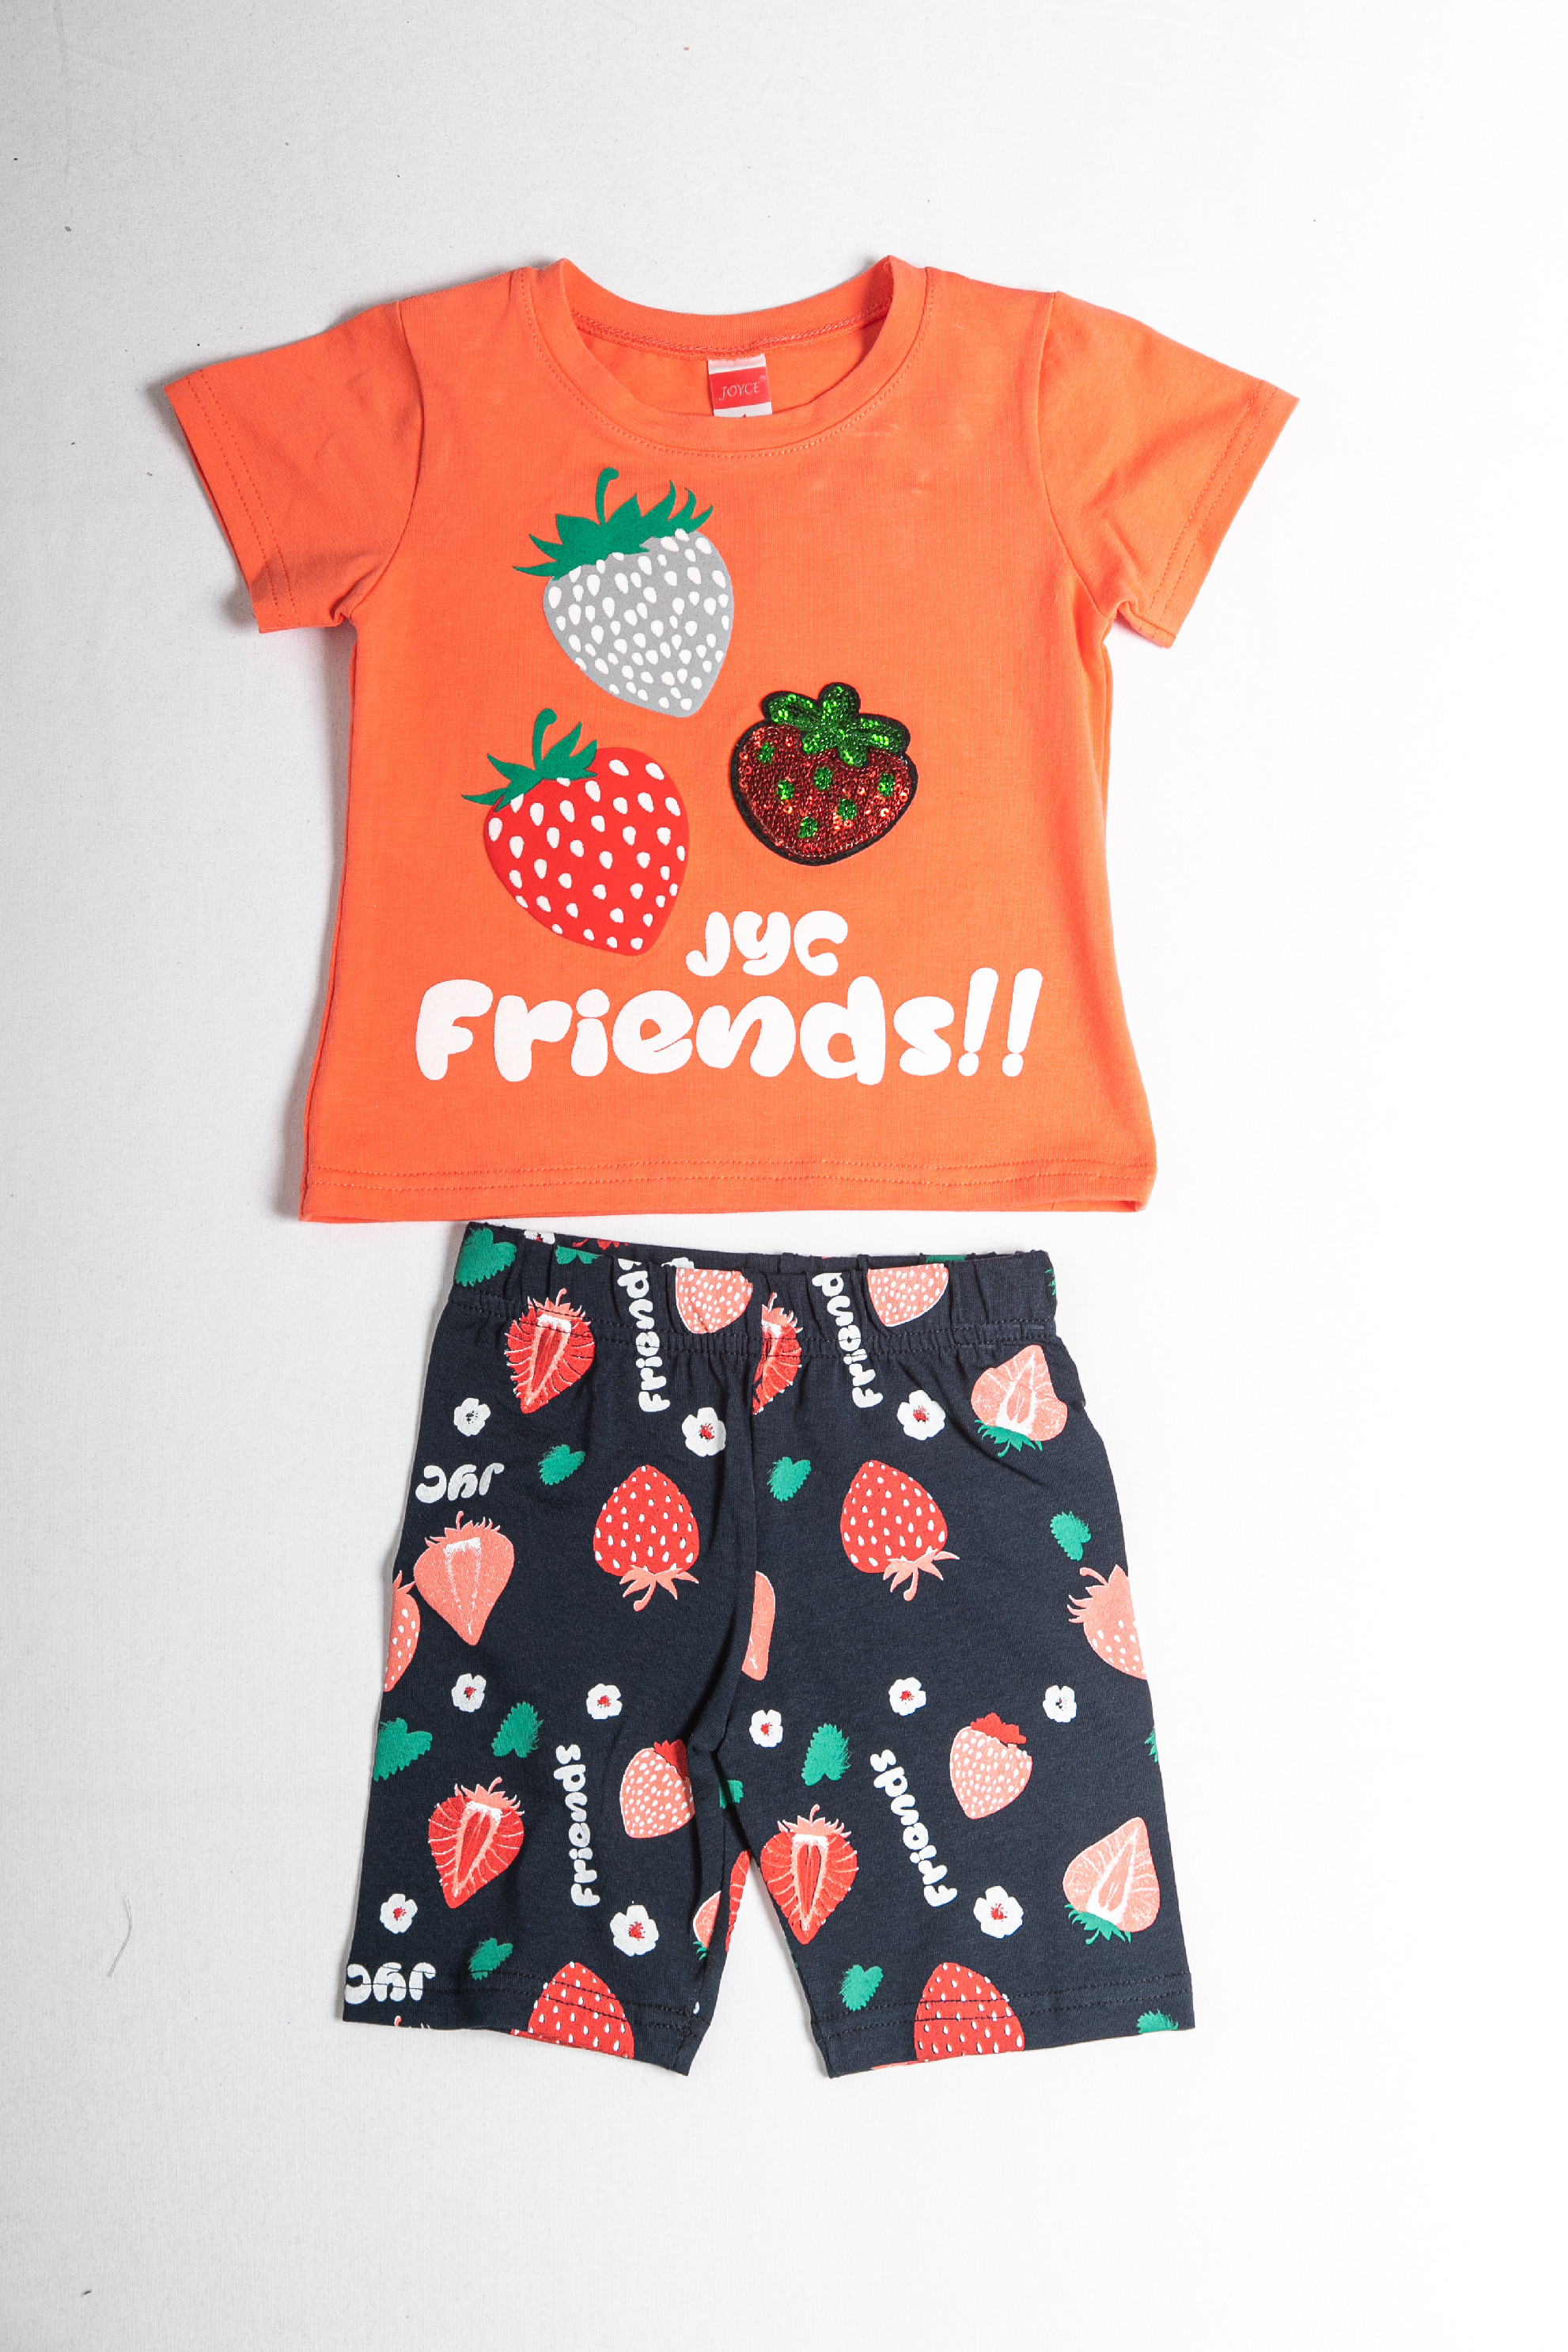 Dívčí letní souprava "FRIENDS"/Zelená, oranžová, bílá Barva: Oranžová, Velikost: vel. 2 (86/92 cm)